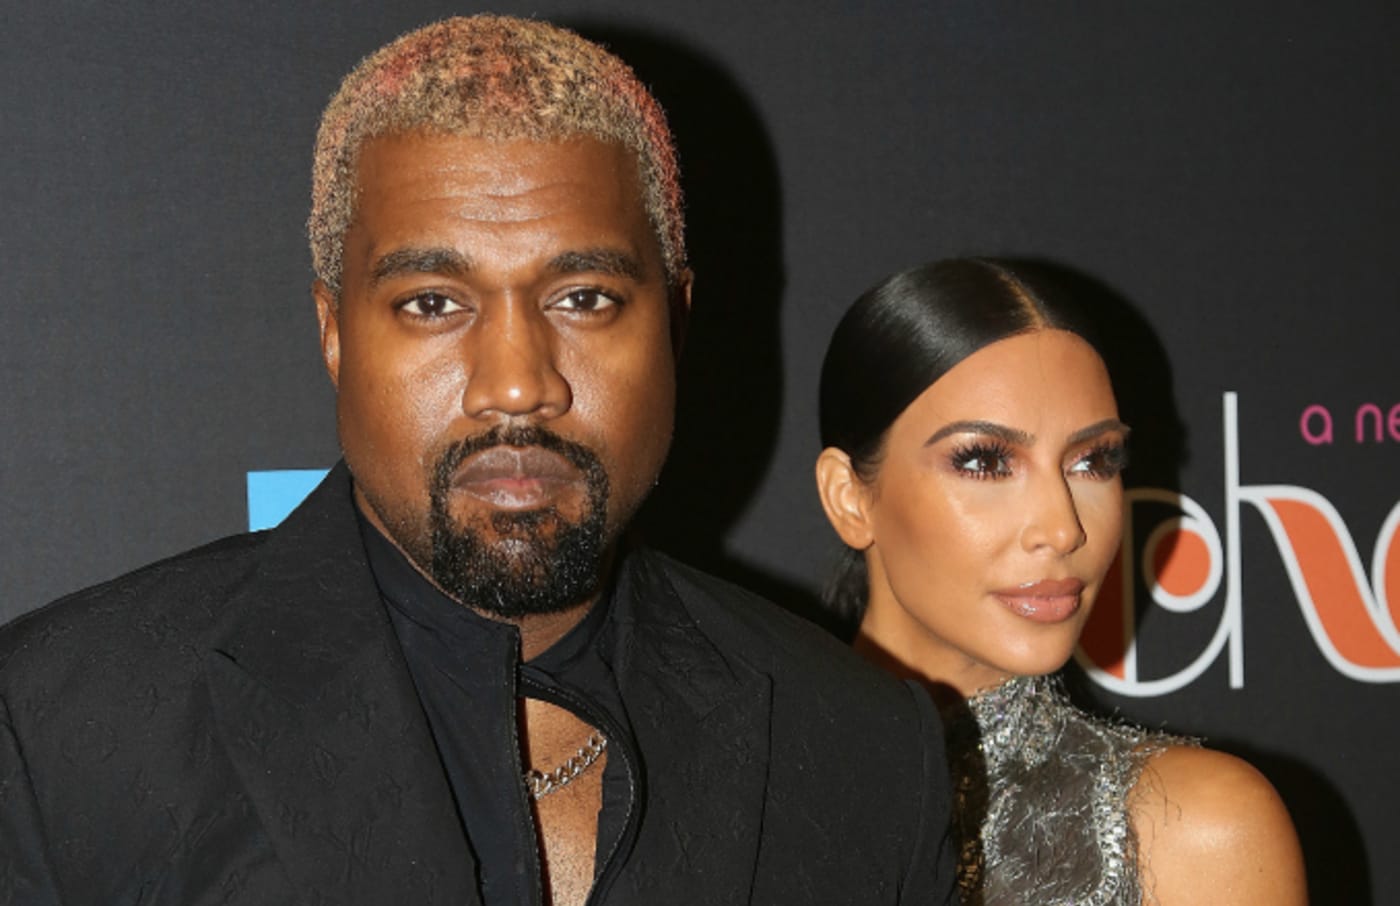 Kanye West and Kim Kardashian West pose